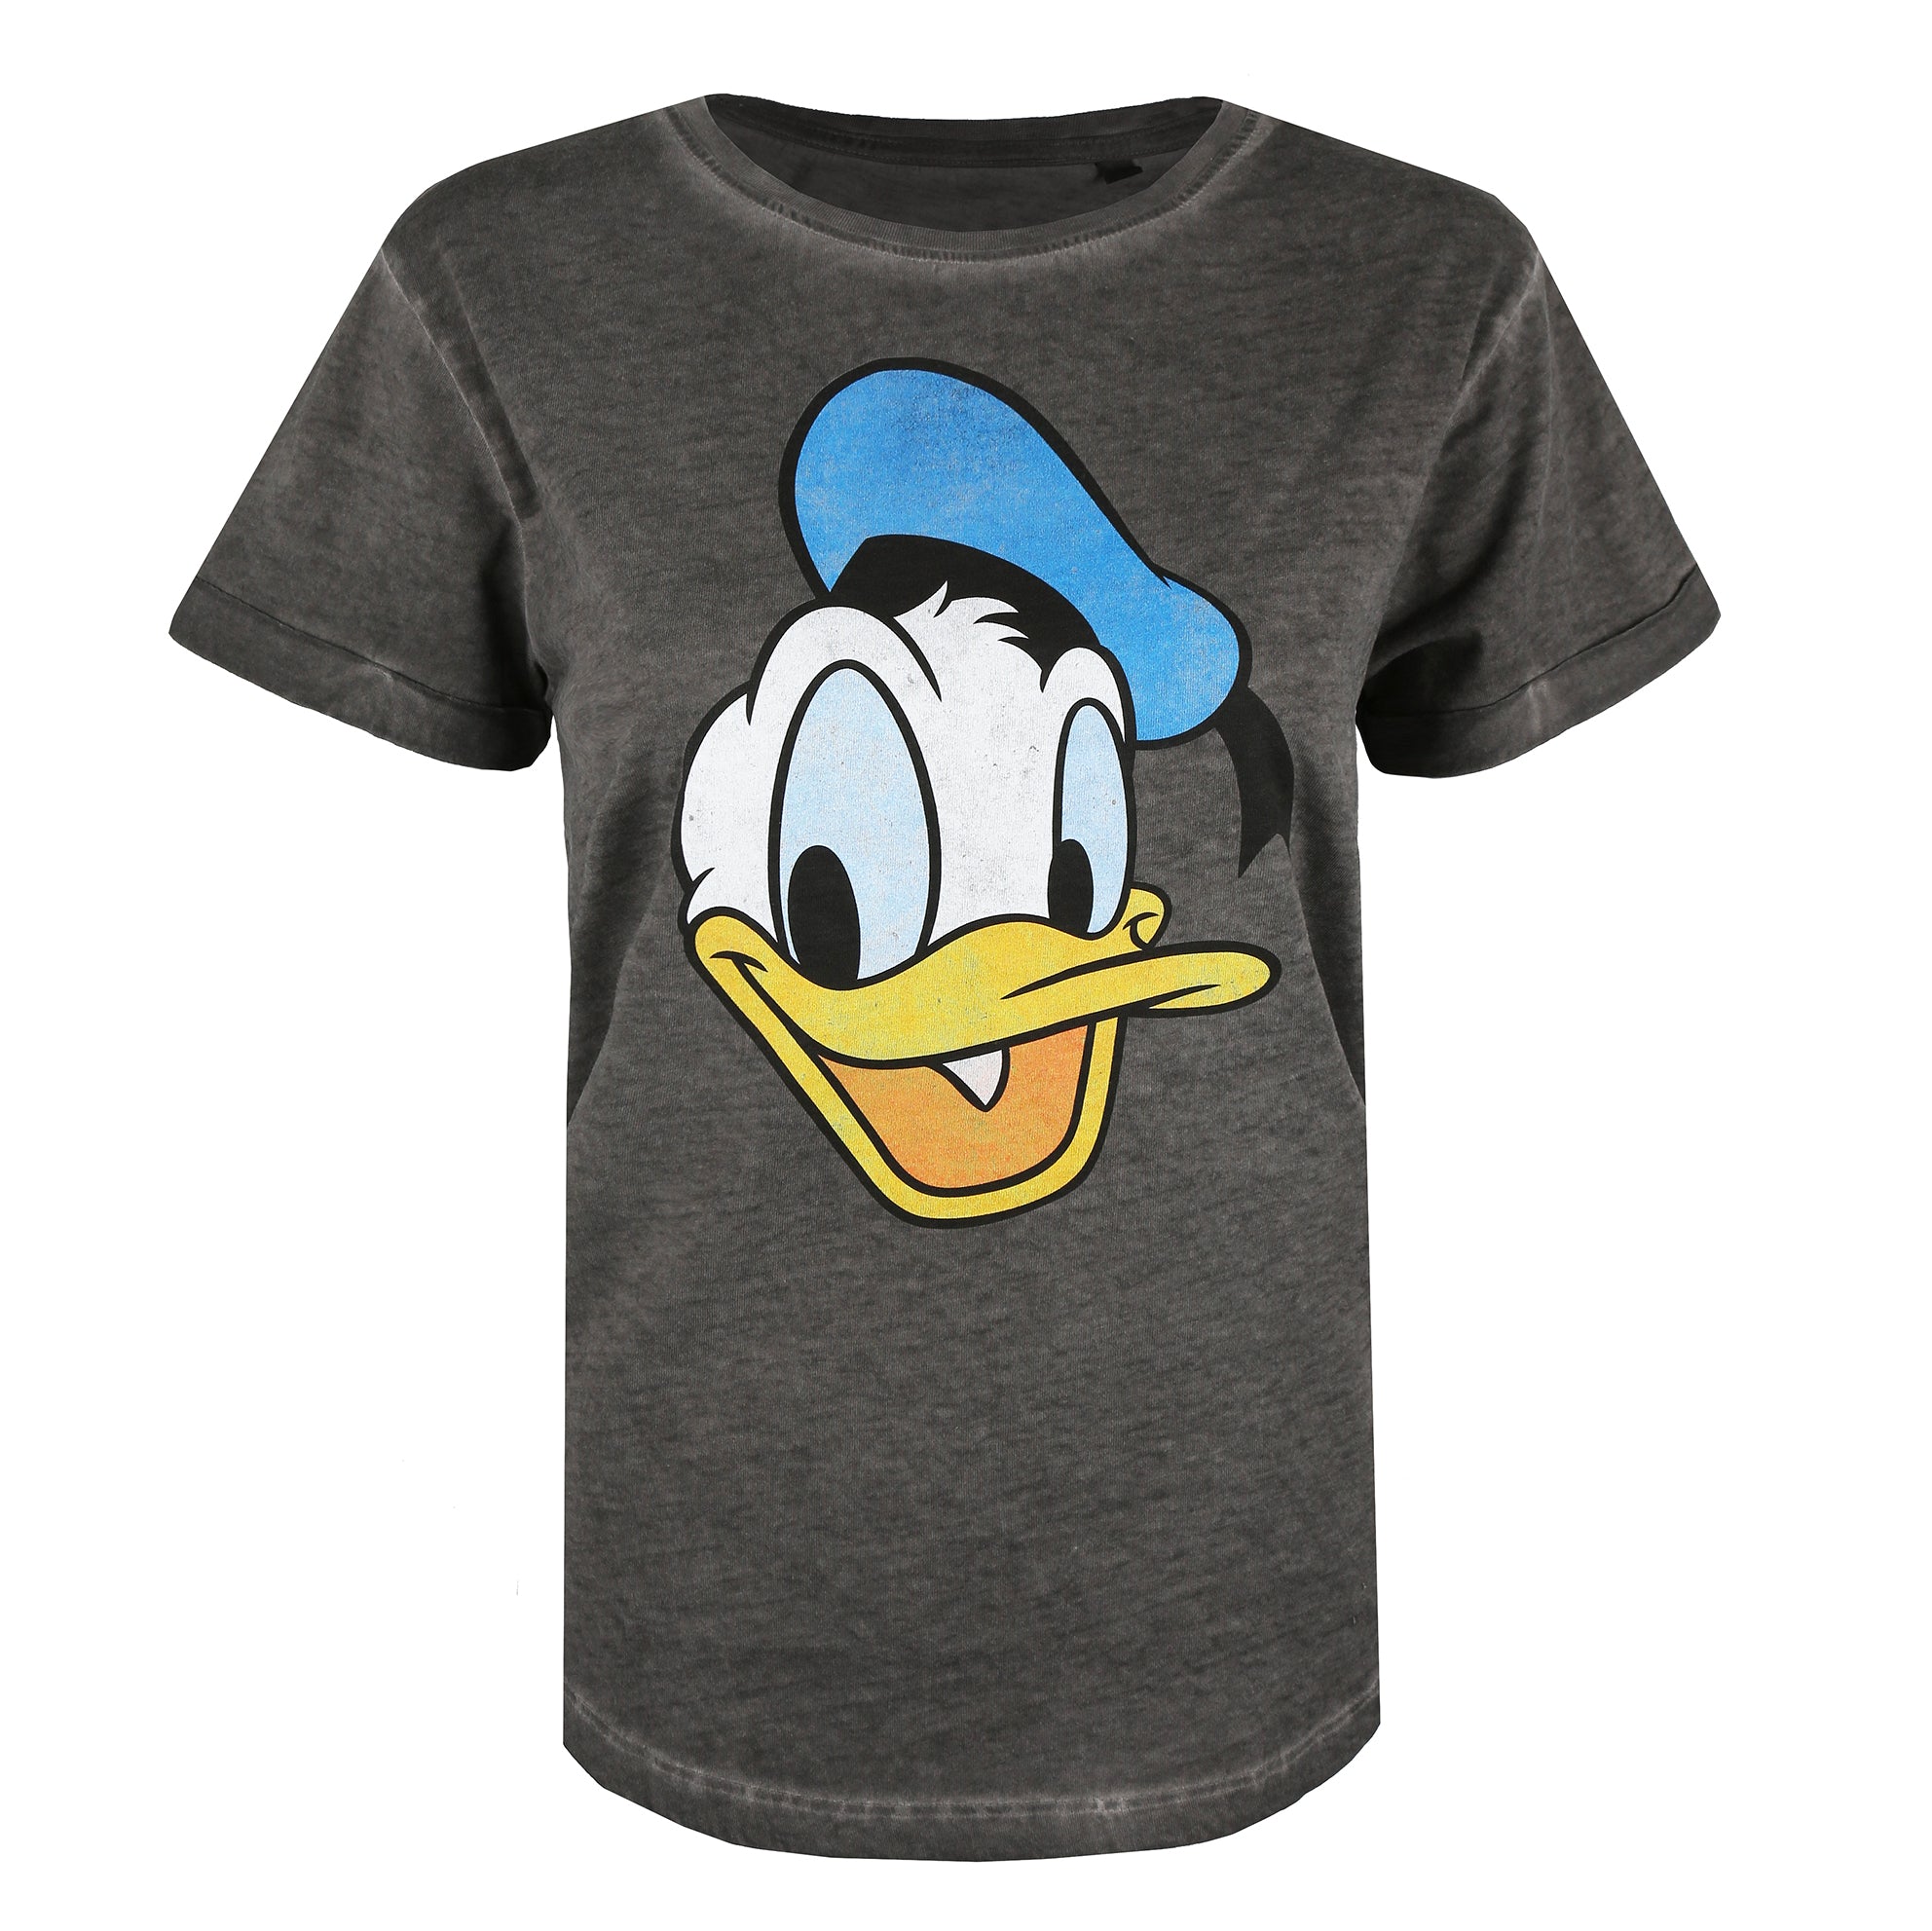 Disney Ladies - Donald Duck Face - T-shirt - Vintage Wash Charcoal